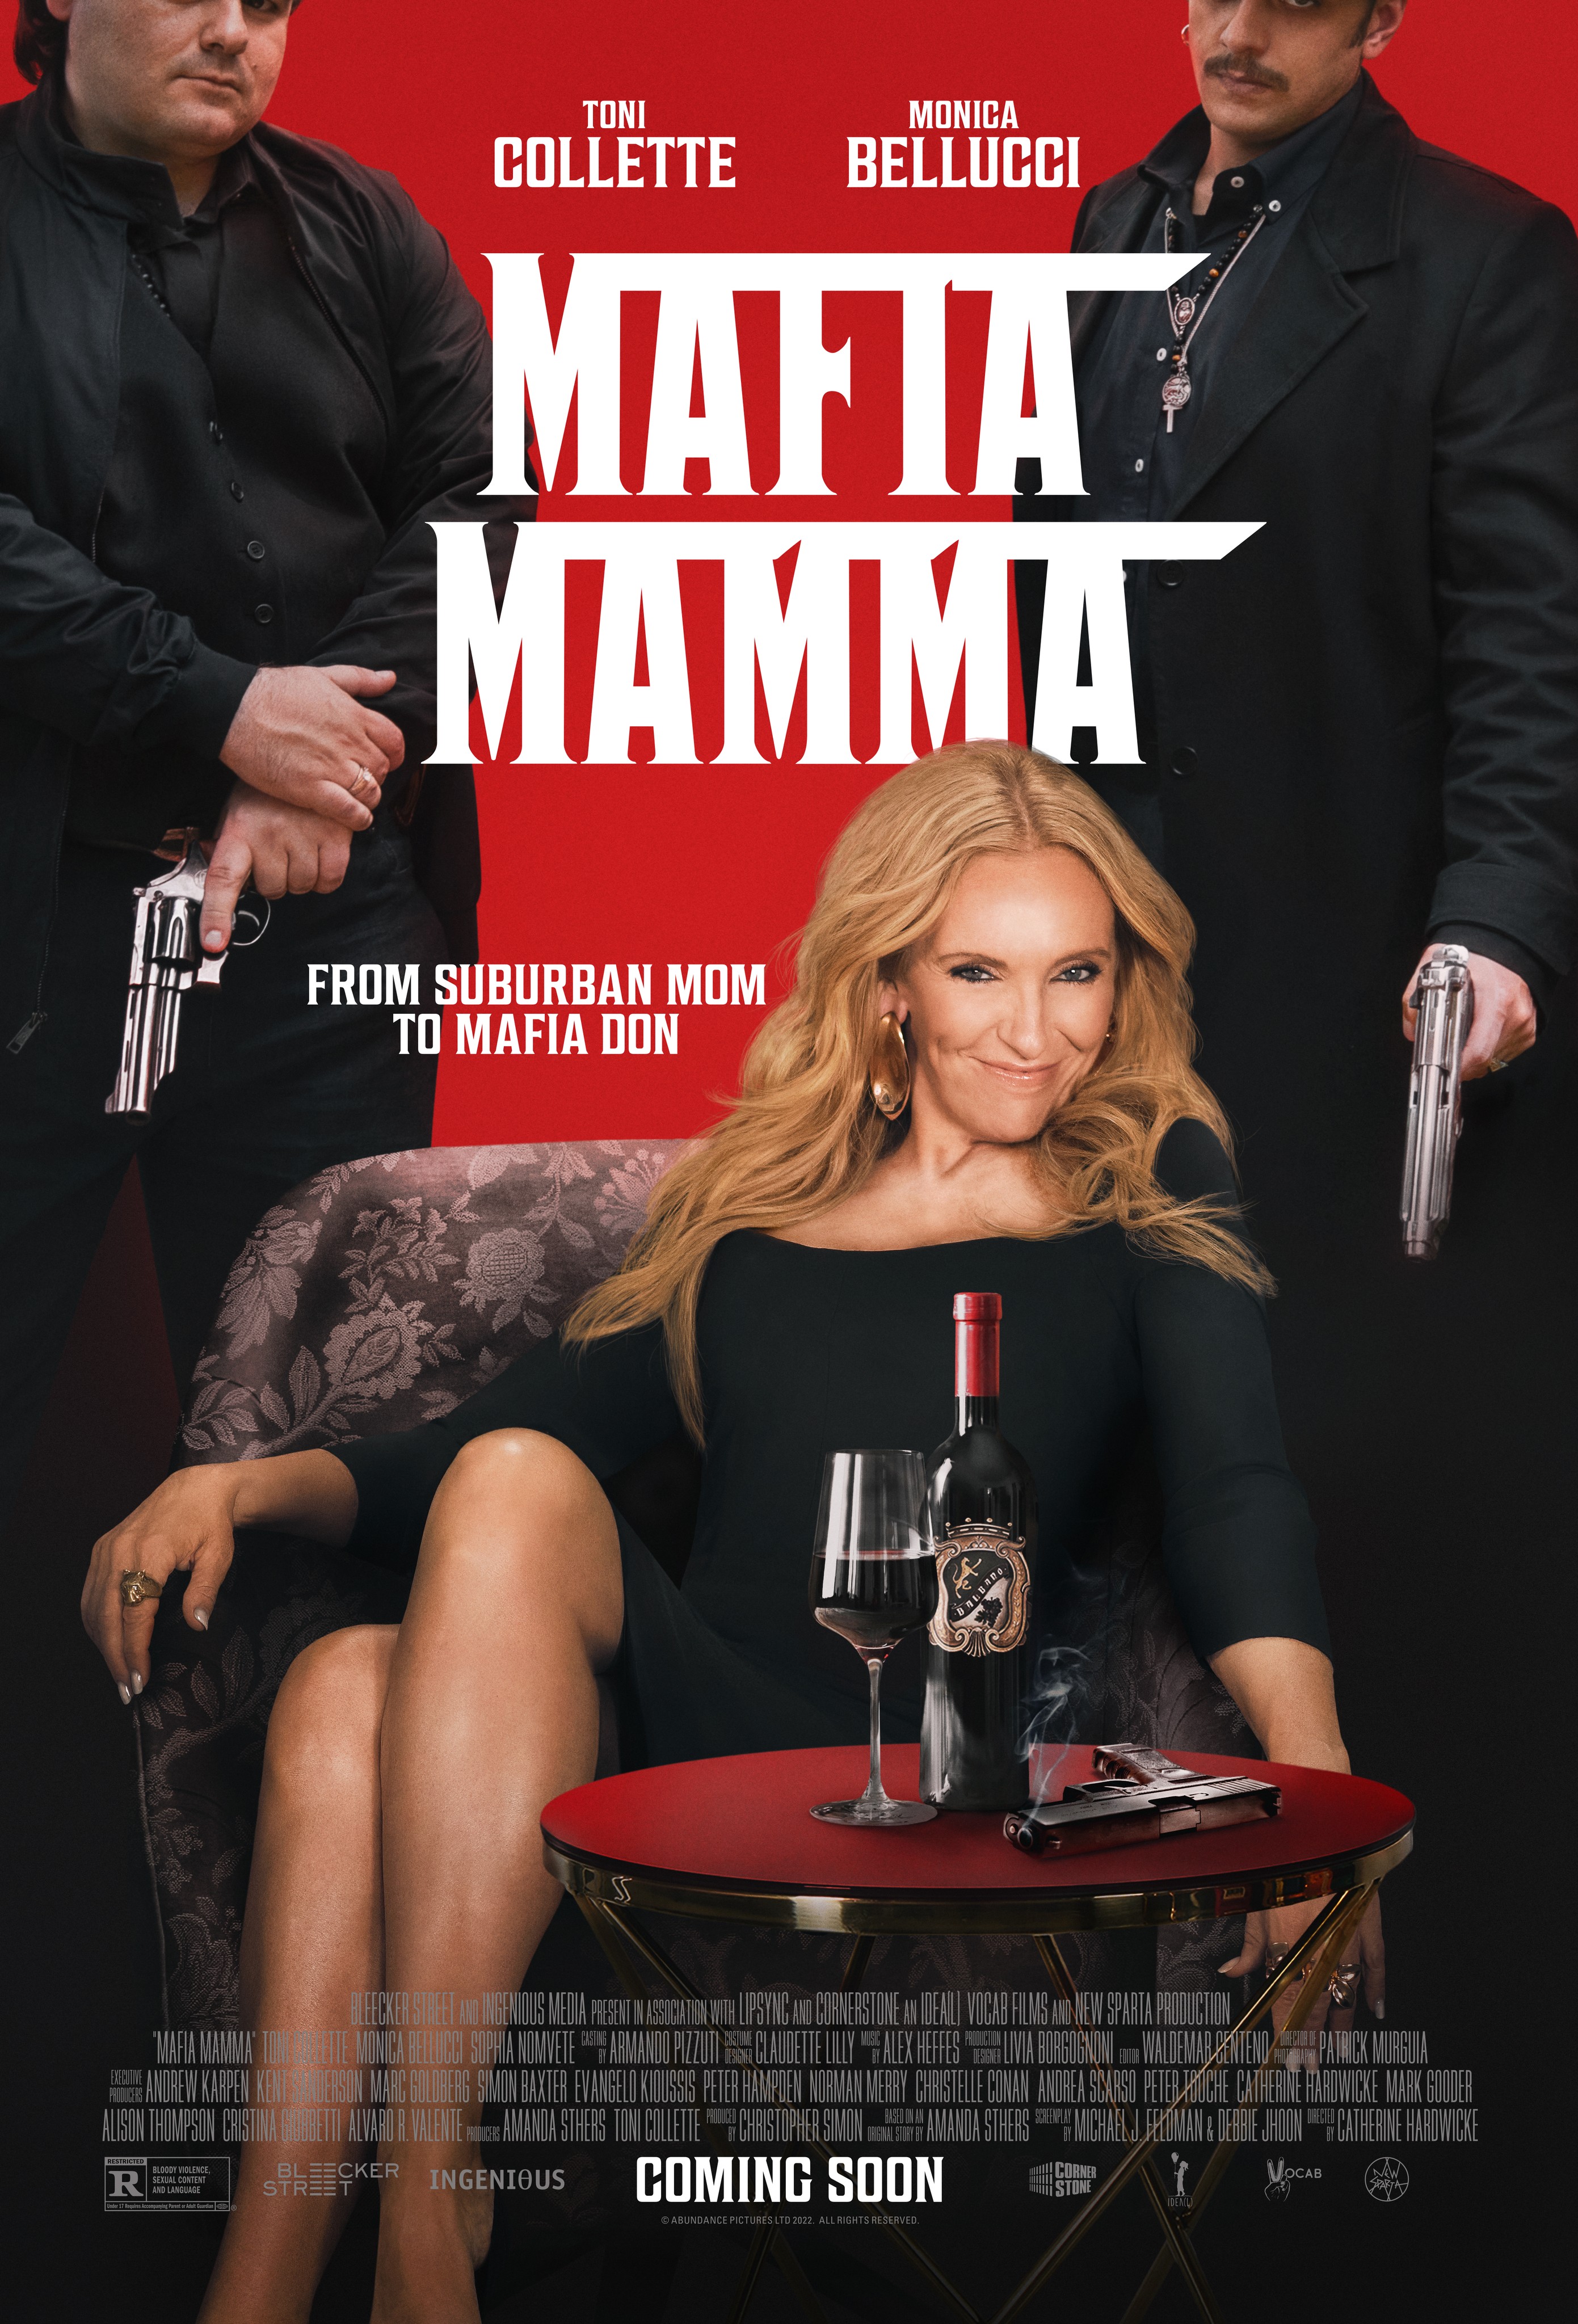 Mafia Mamma: Movie Clip Calling & Videos